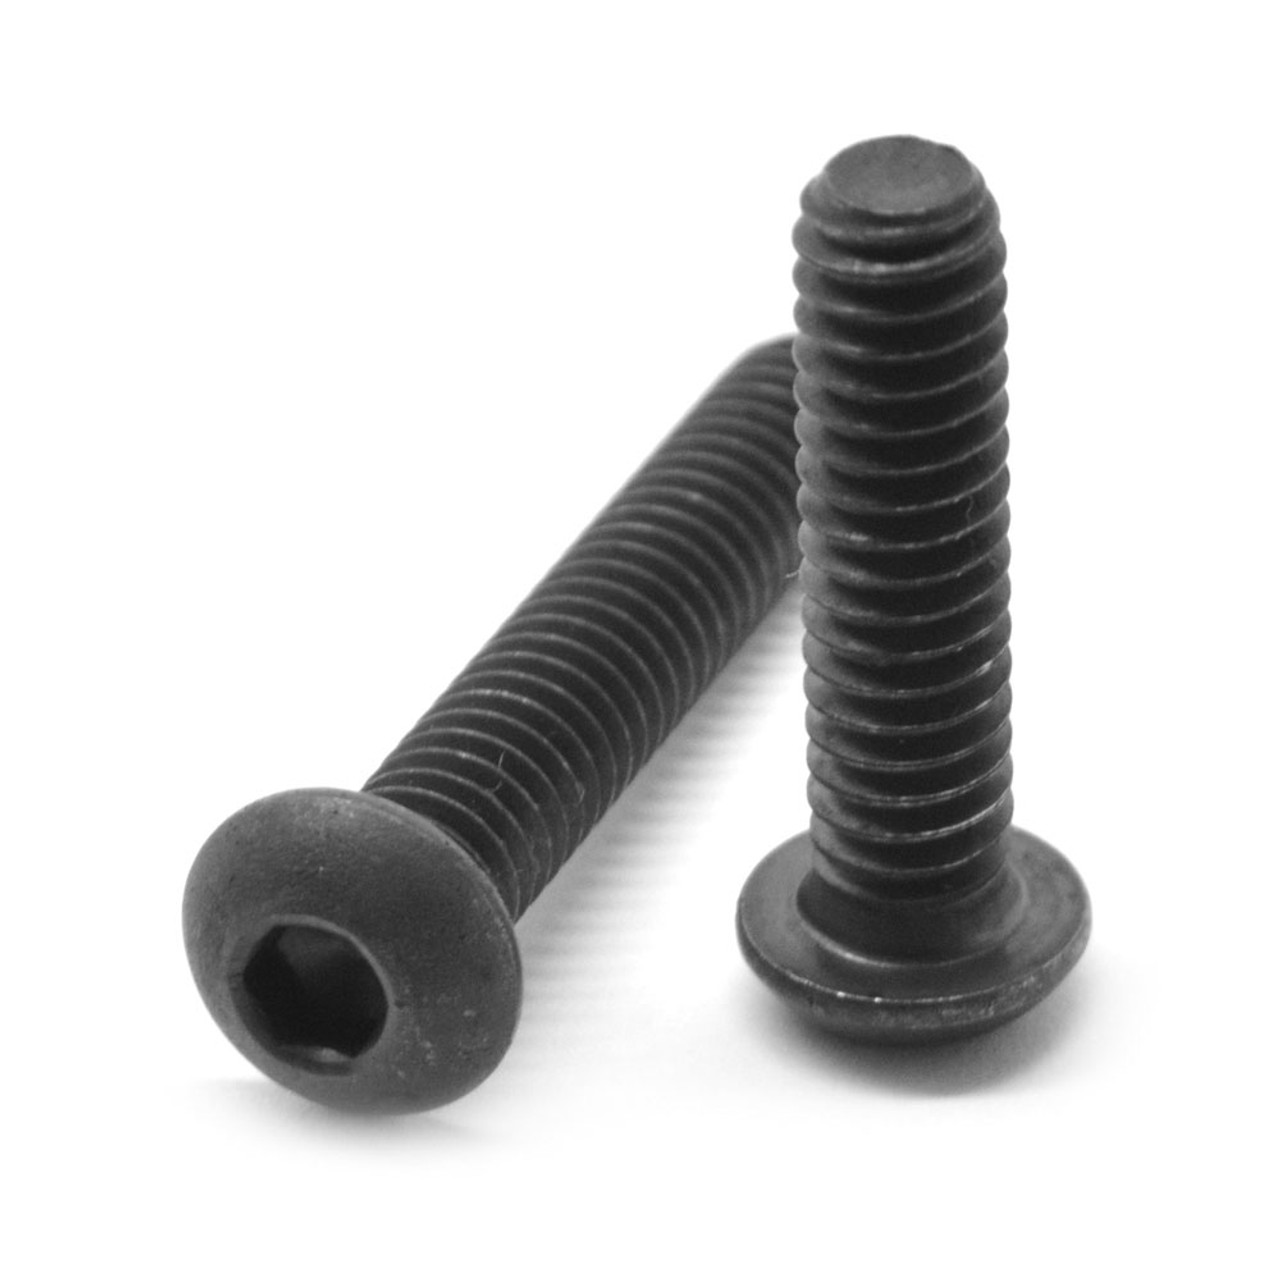 #10-32 x 3/8" (FT) Fine Thread Socket Button Head Cap Screw Alloy Steel Black Oxide